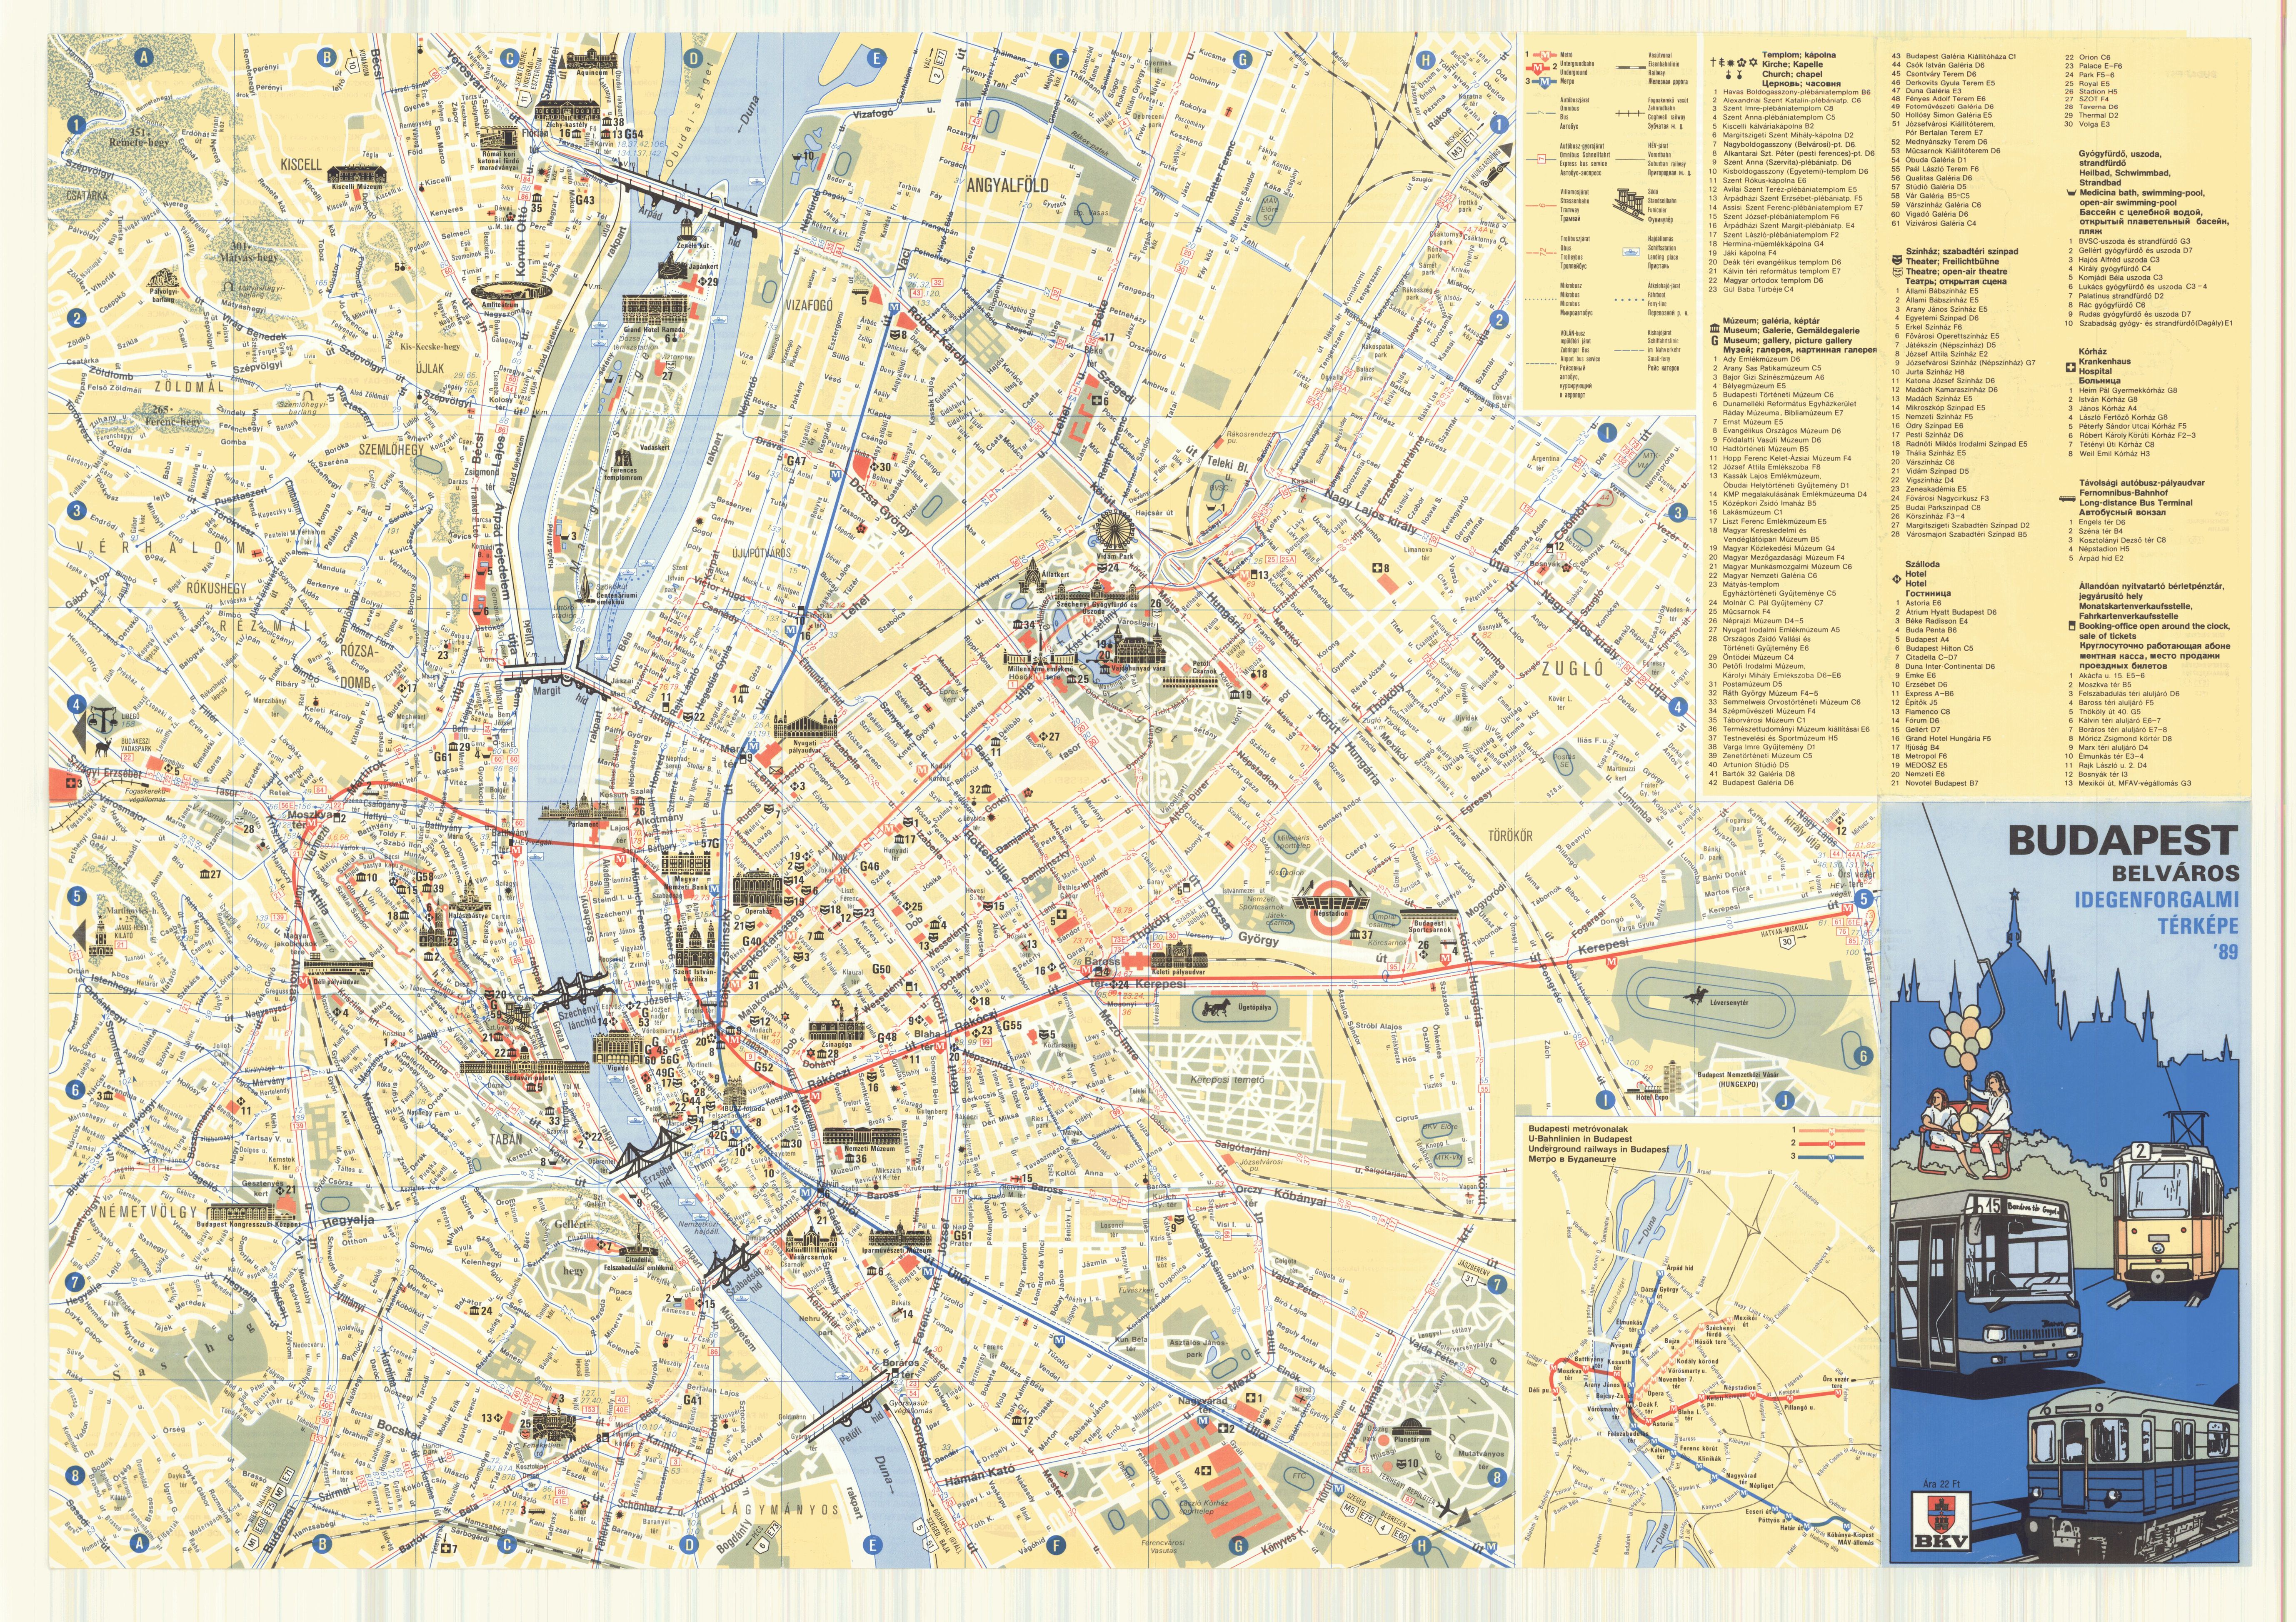 Budapest idegenforgalmi térképe a rendszerváltás előtt megépült hidakat ábrázolja, 1989. (BFL XV.16.g.201/19)